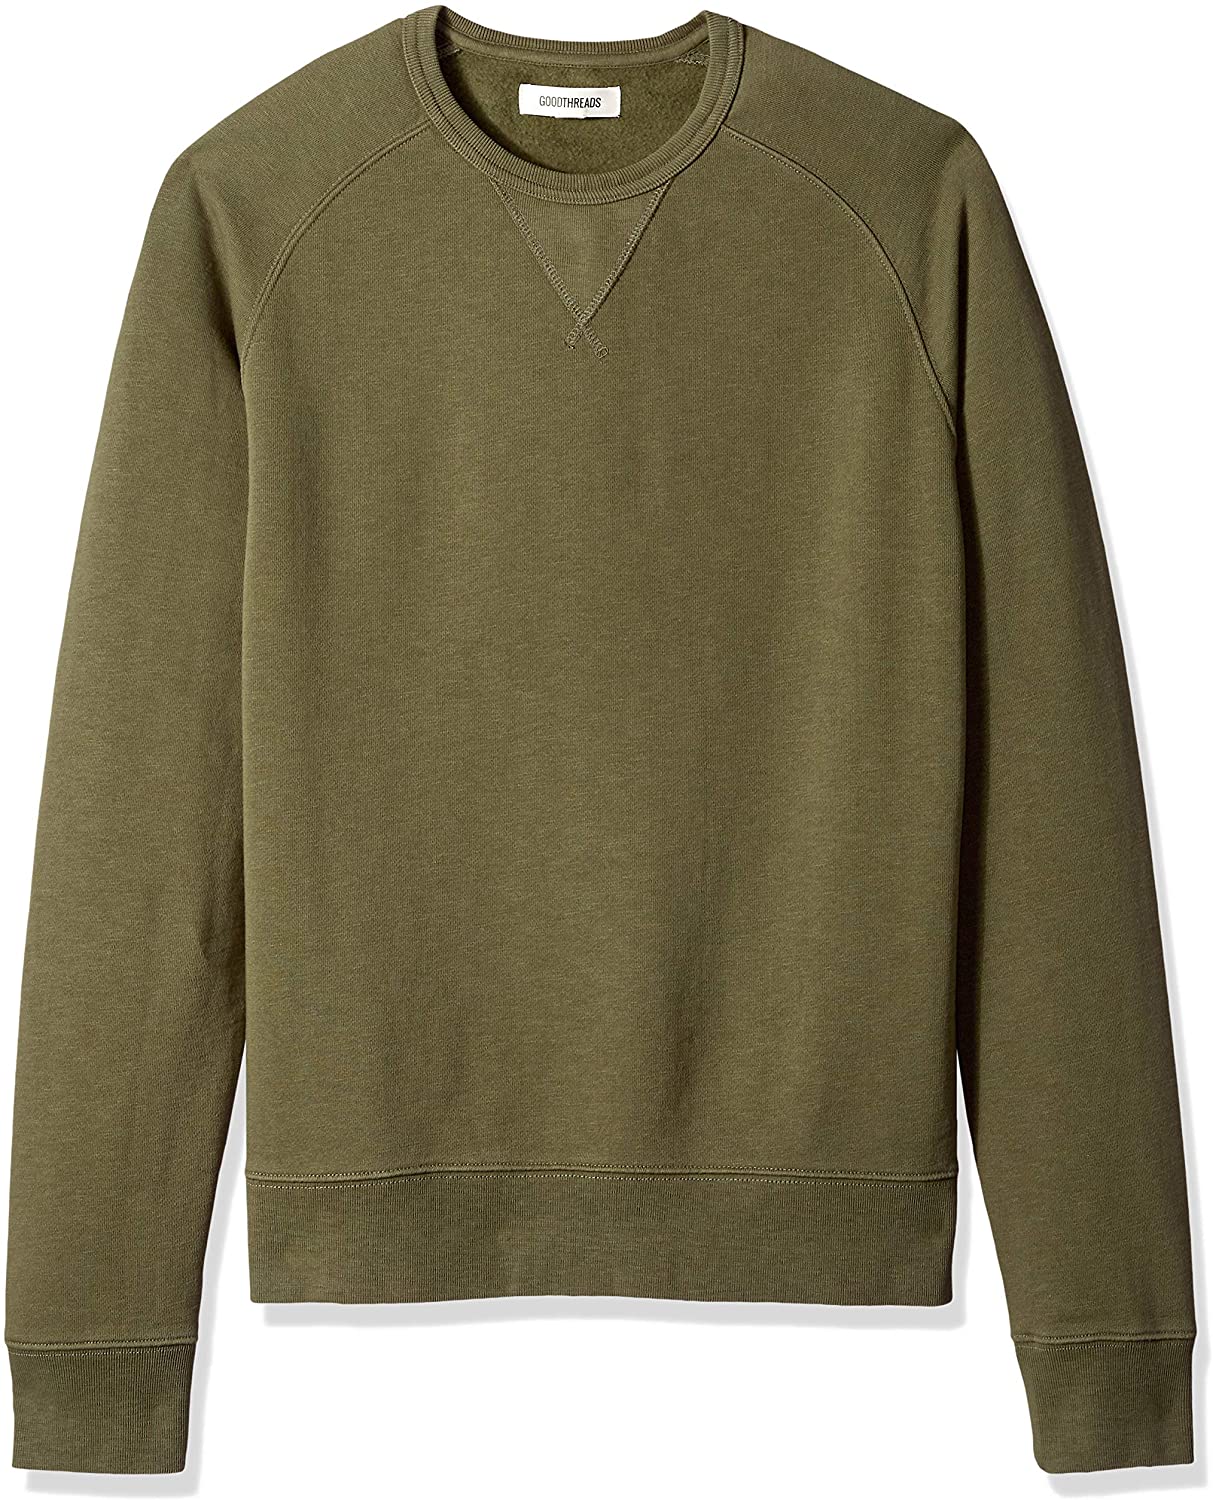 Goodthreads Men's Crewneck Fleece Sweatshirt